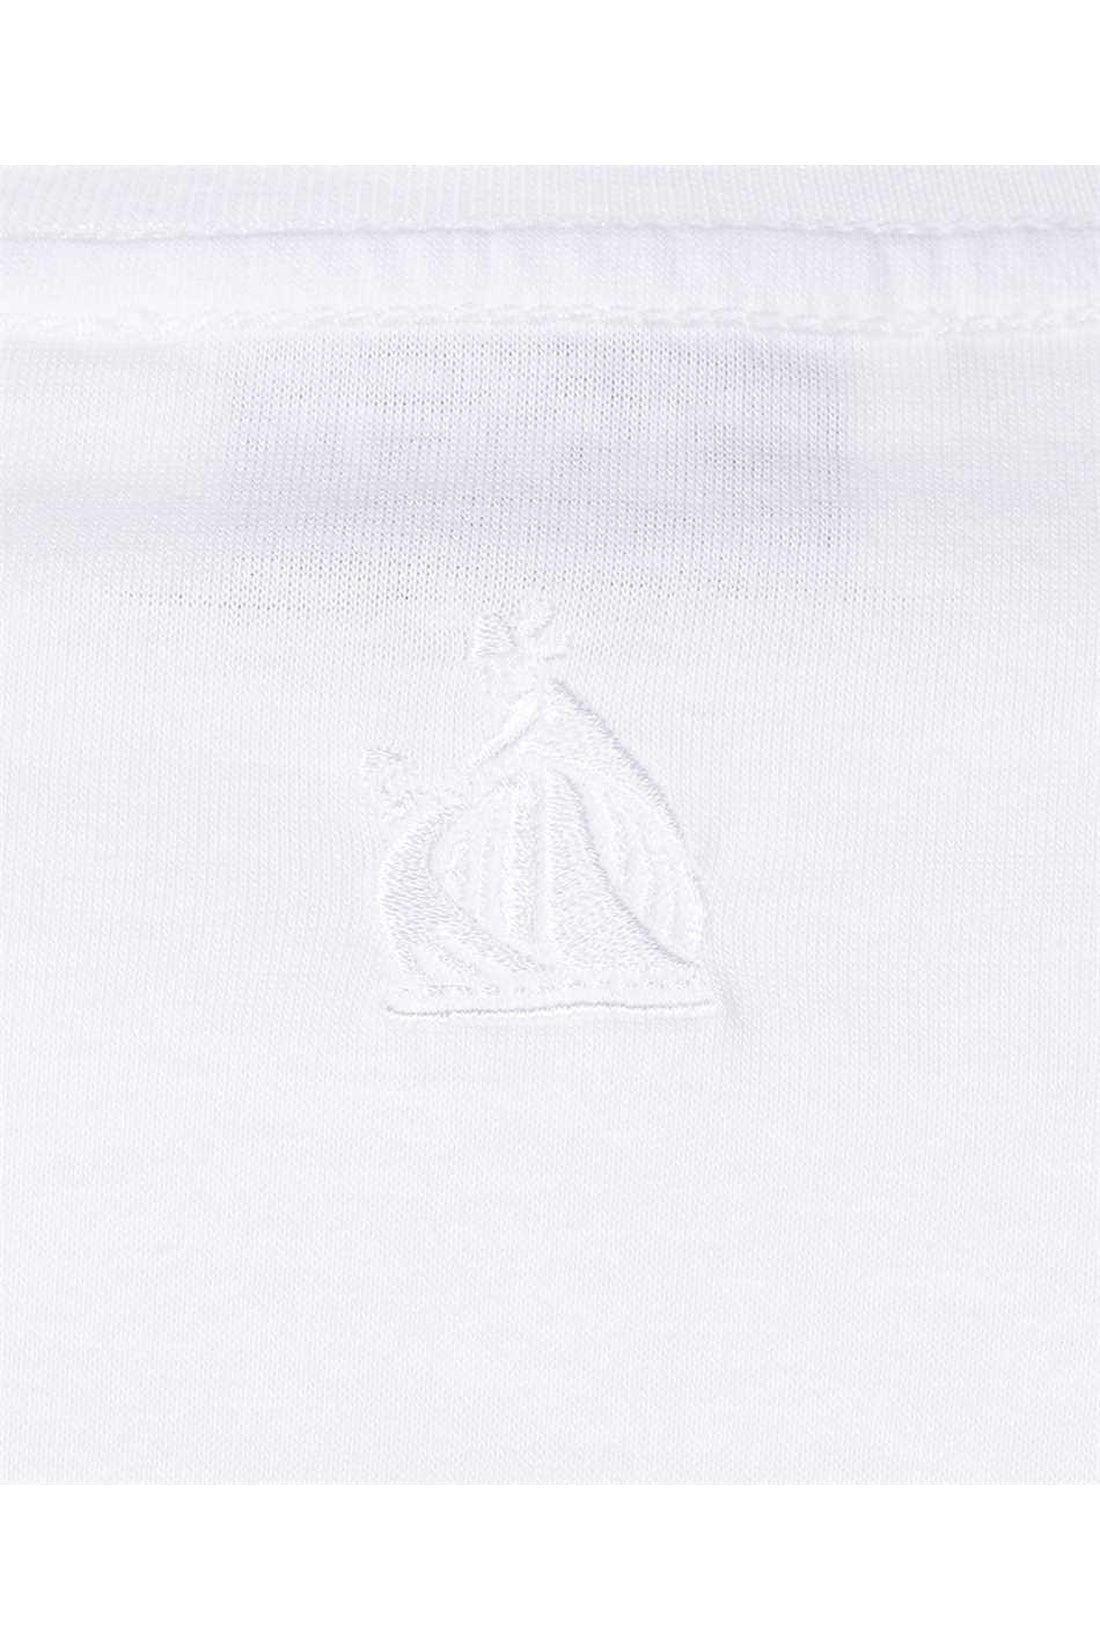 Lanvin-OUTLET-SALE-Logo detail cropped t-shirt-ARCHIVIST